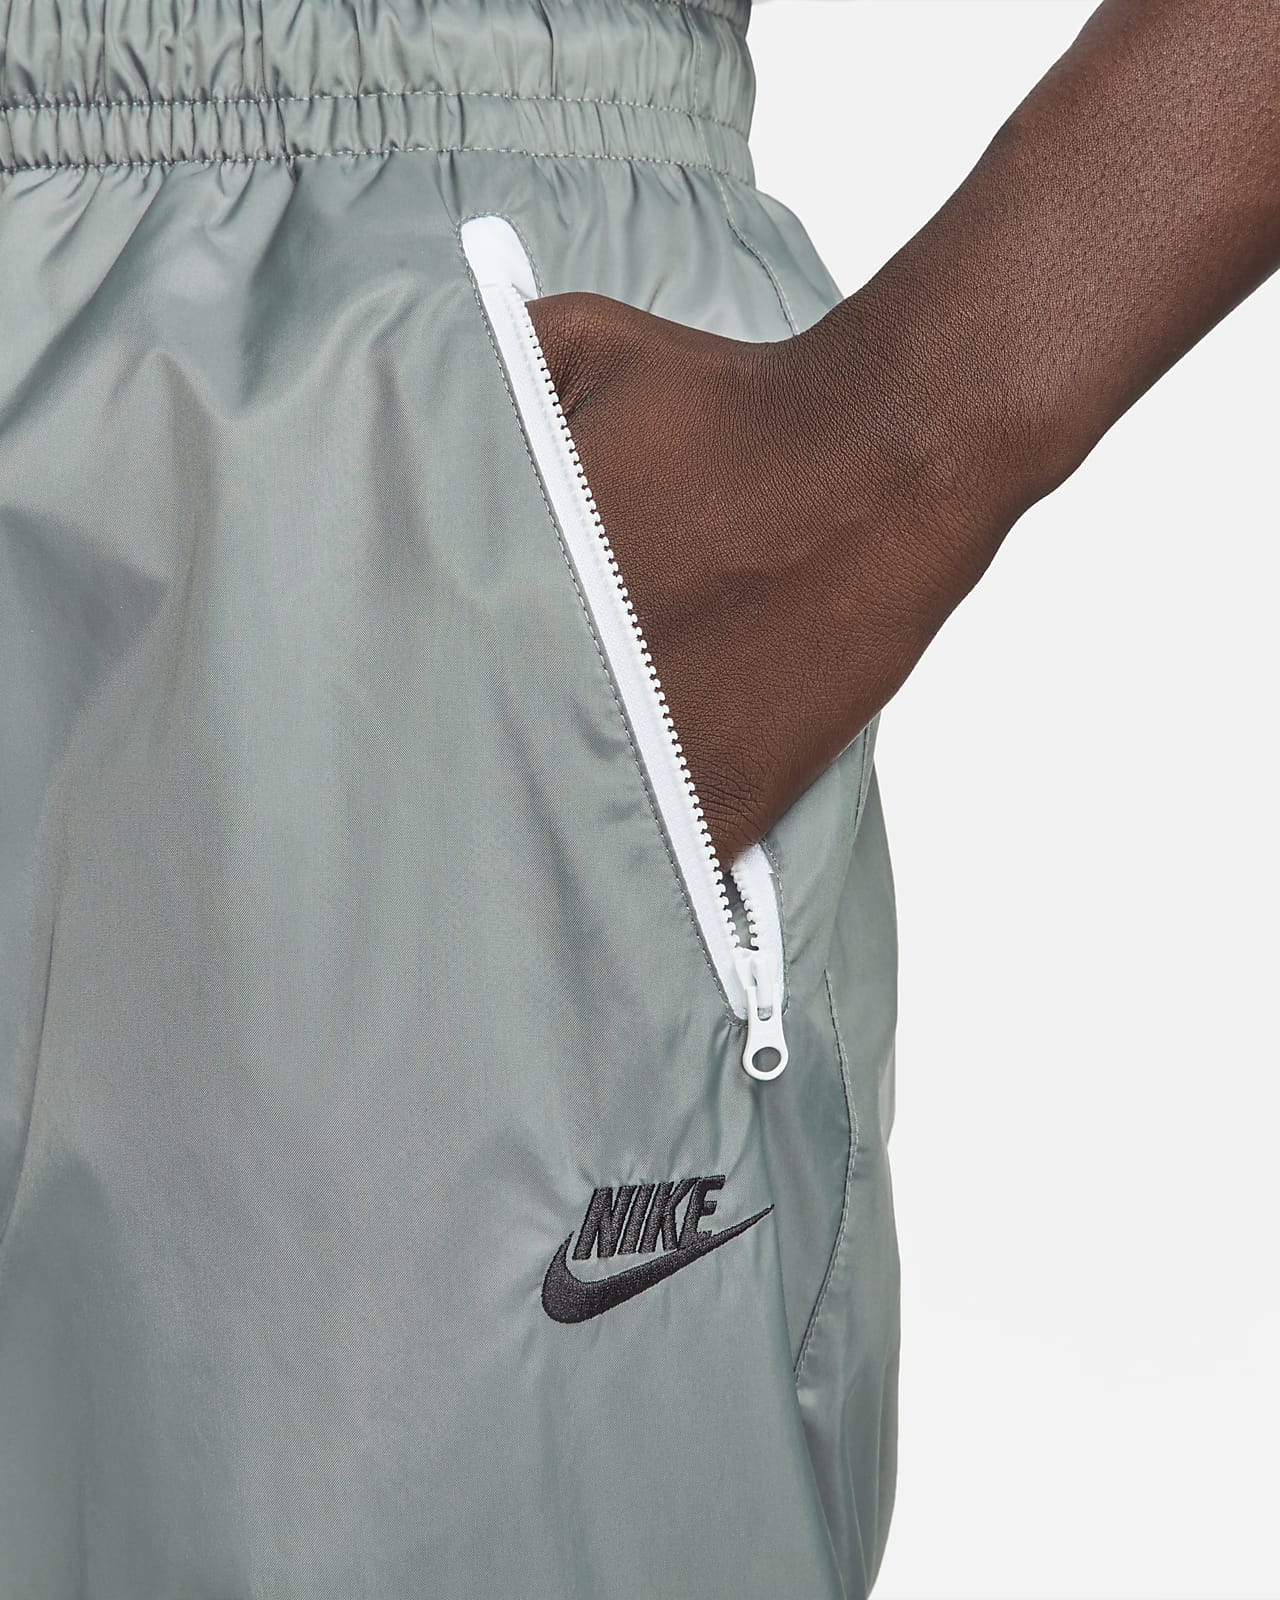 Nike Windrunner Woven Lined Pants